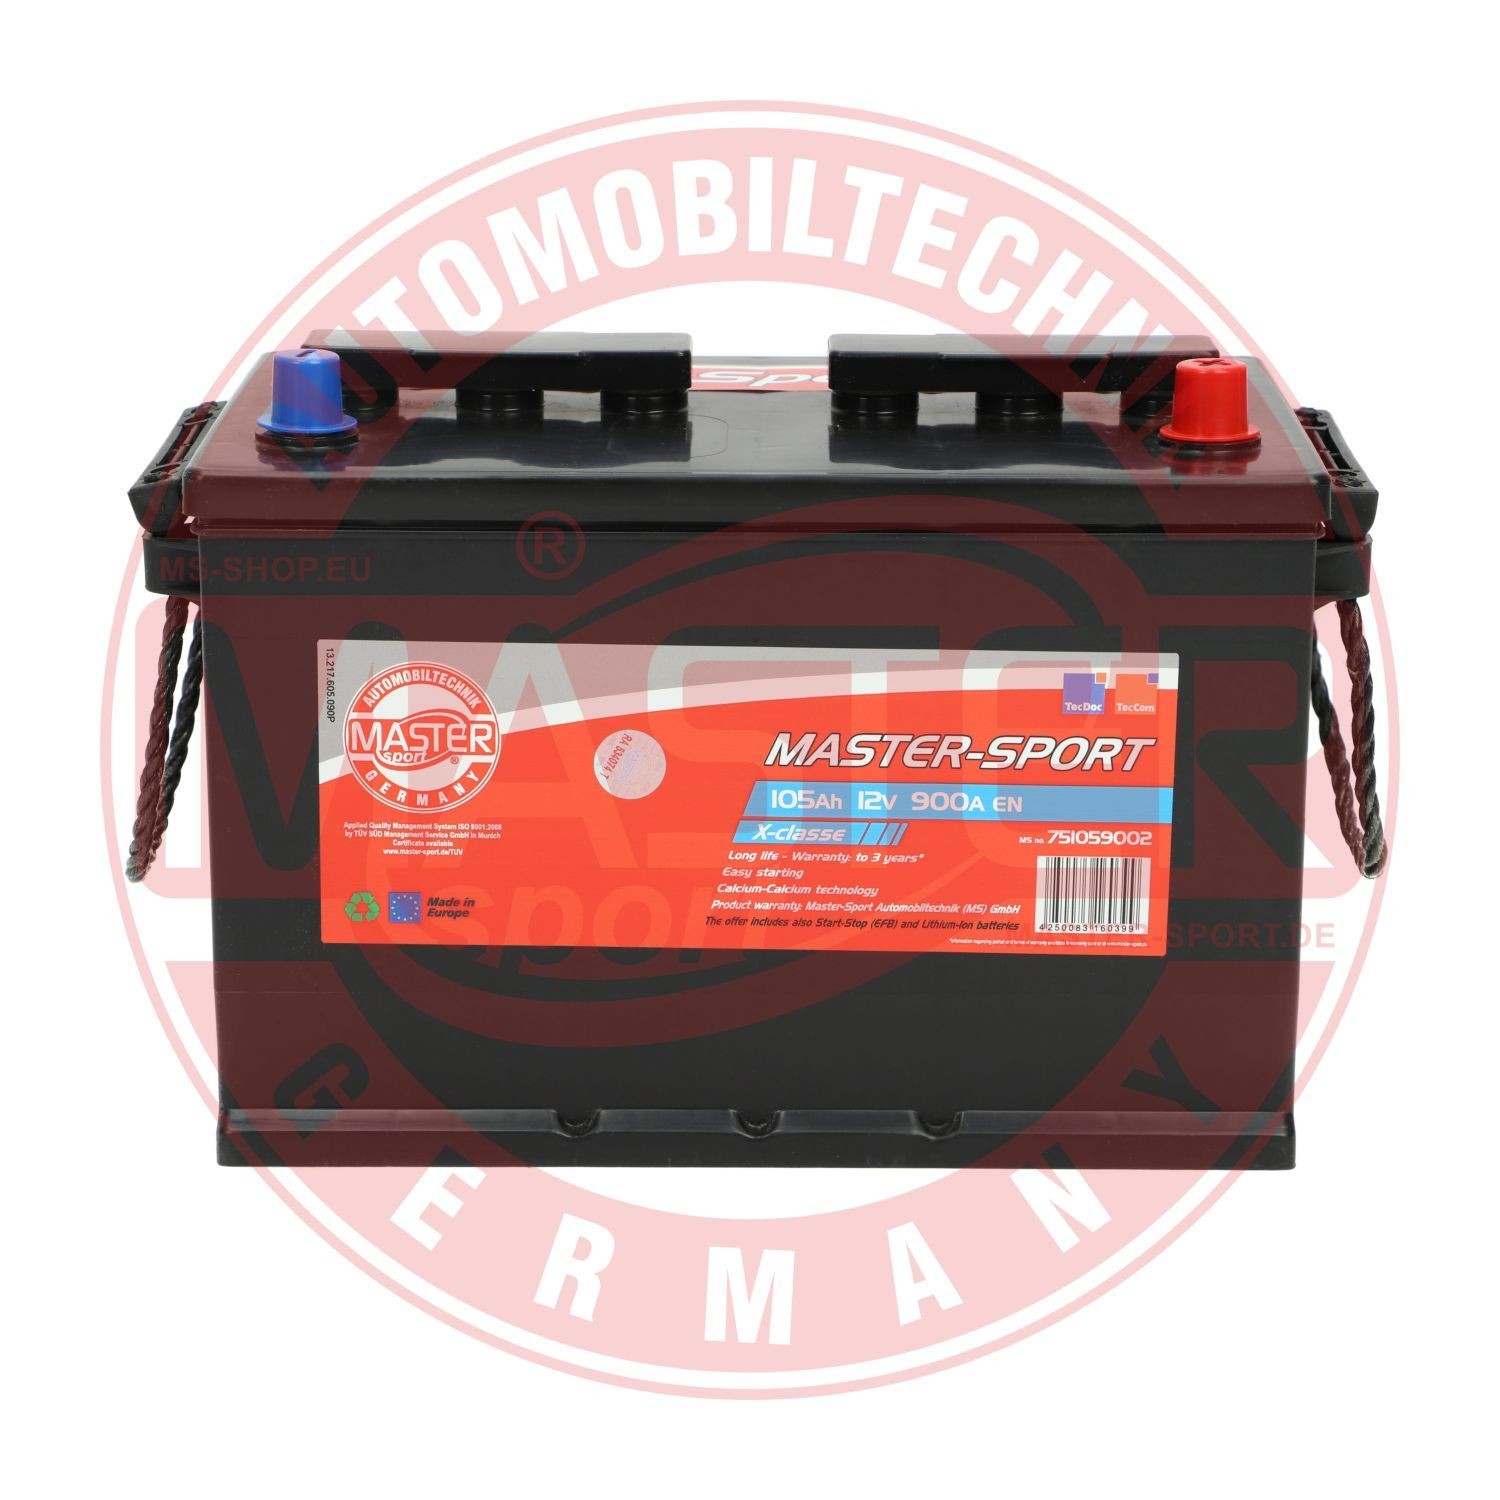 751059002 MASTER-SPORT Batterie für BMC online bestellen